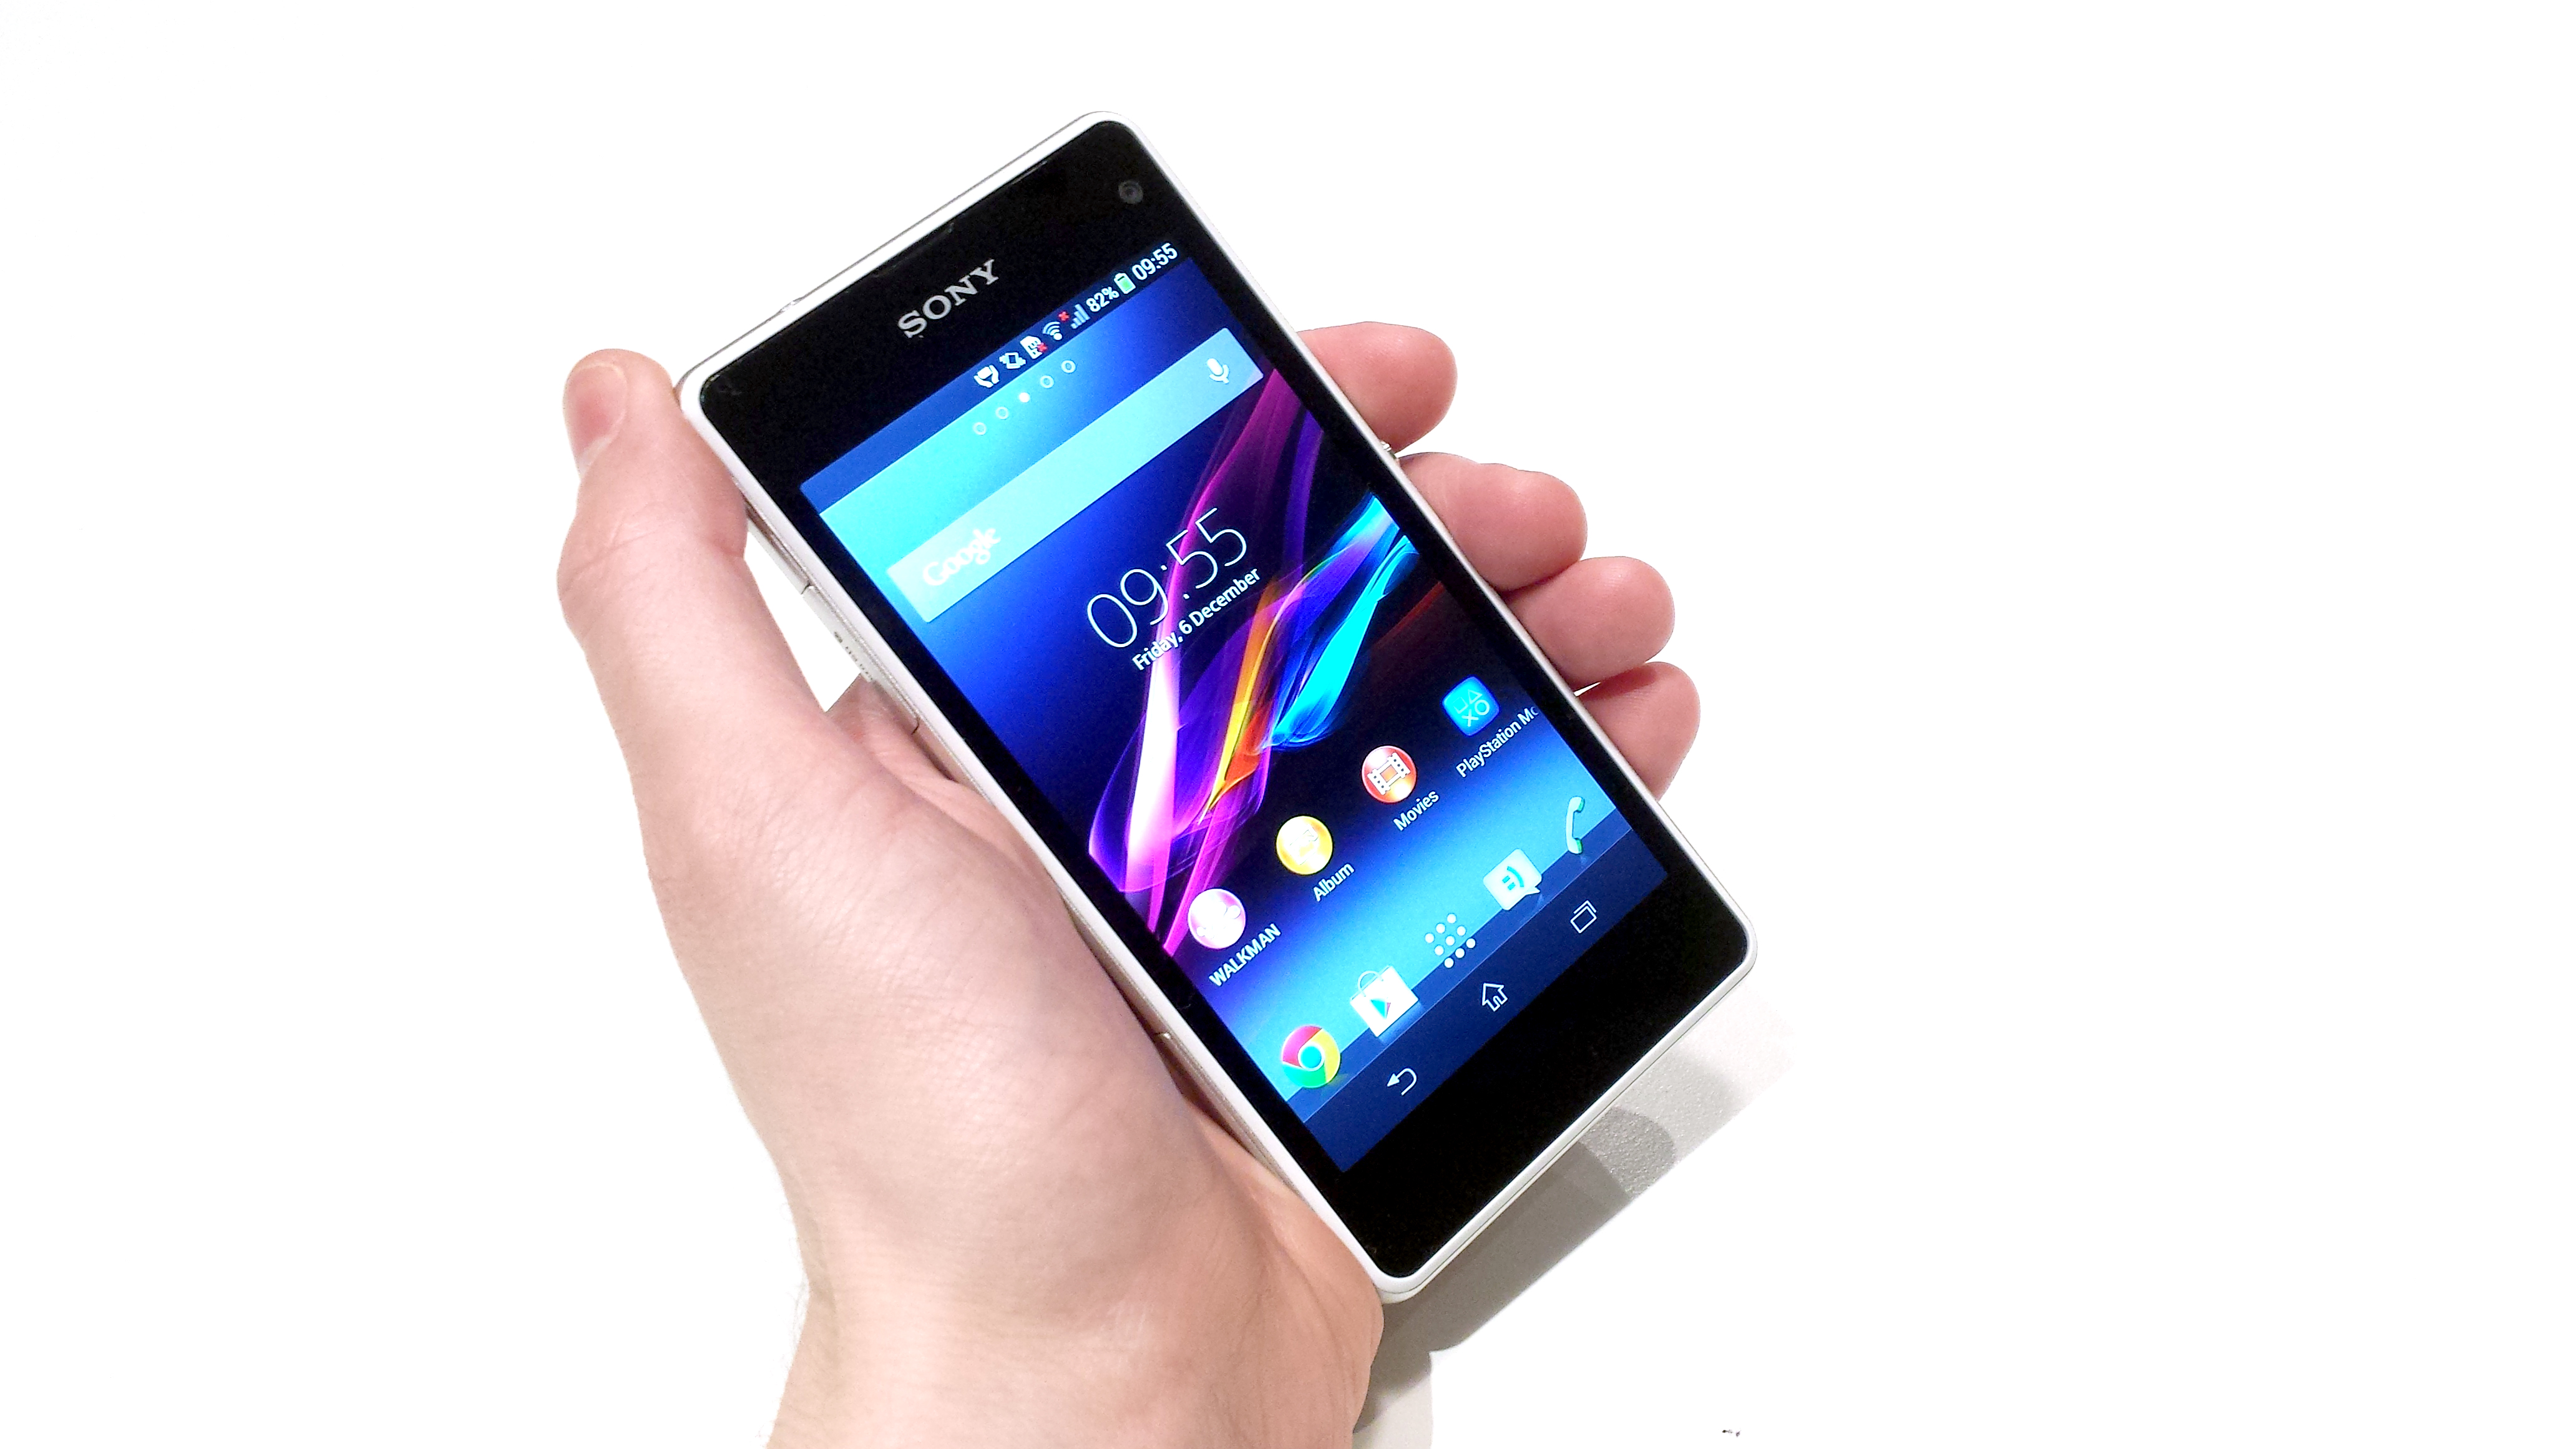 De daadwerkelijke Doe een poging Wieg Sony Xperia Z1 Compact release date and price: where can I get it? |  TechRadar